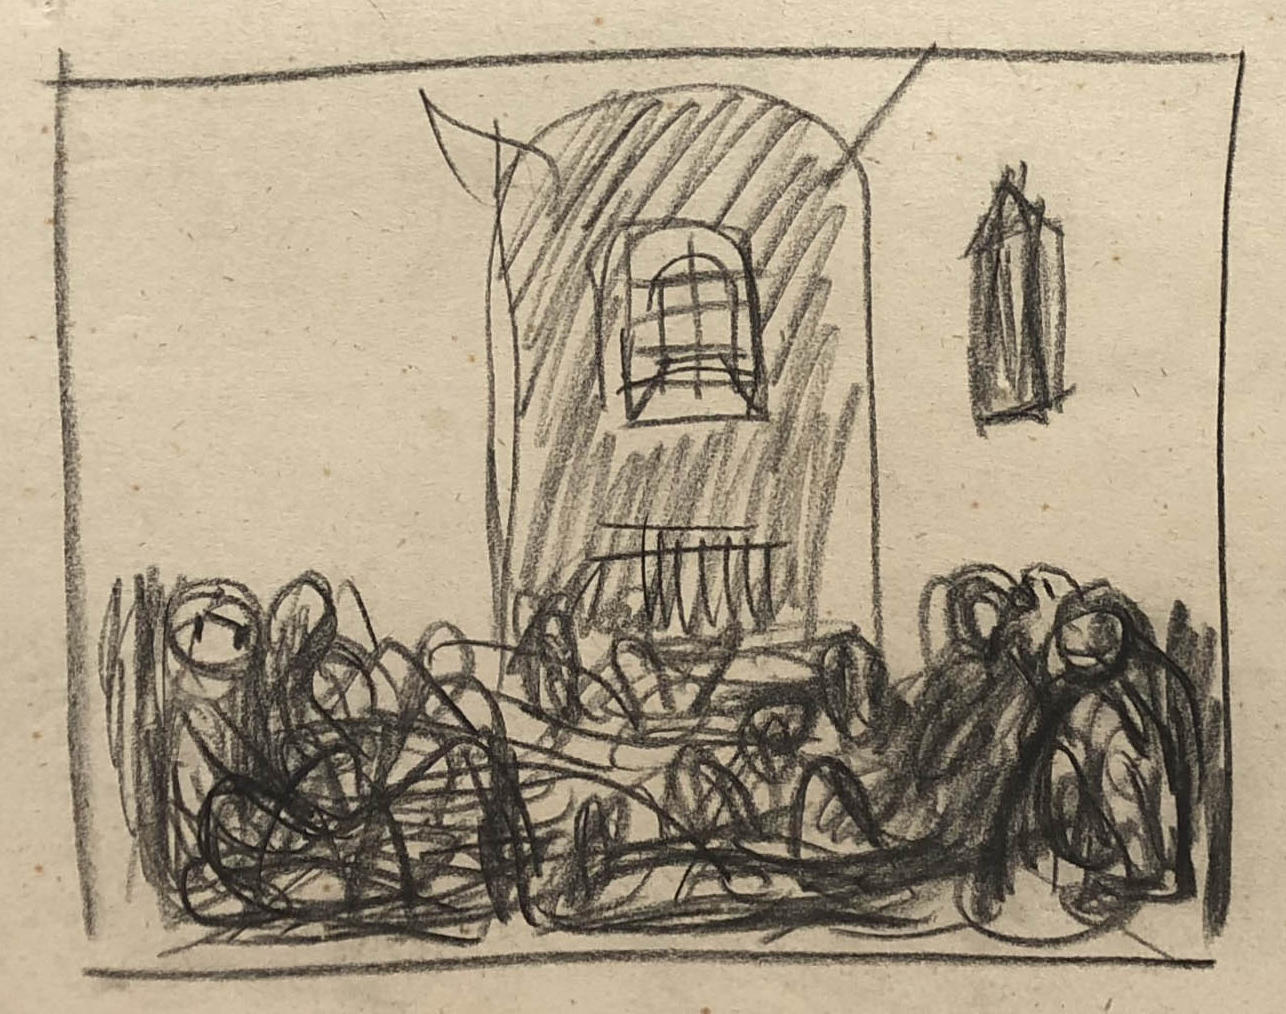 Rysunek ołówiekim. Szkicowo narysowane postacie siedzące na podłodze w celi więziennej.